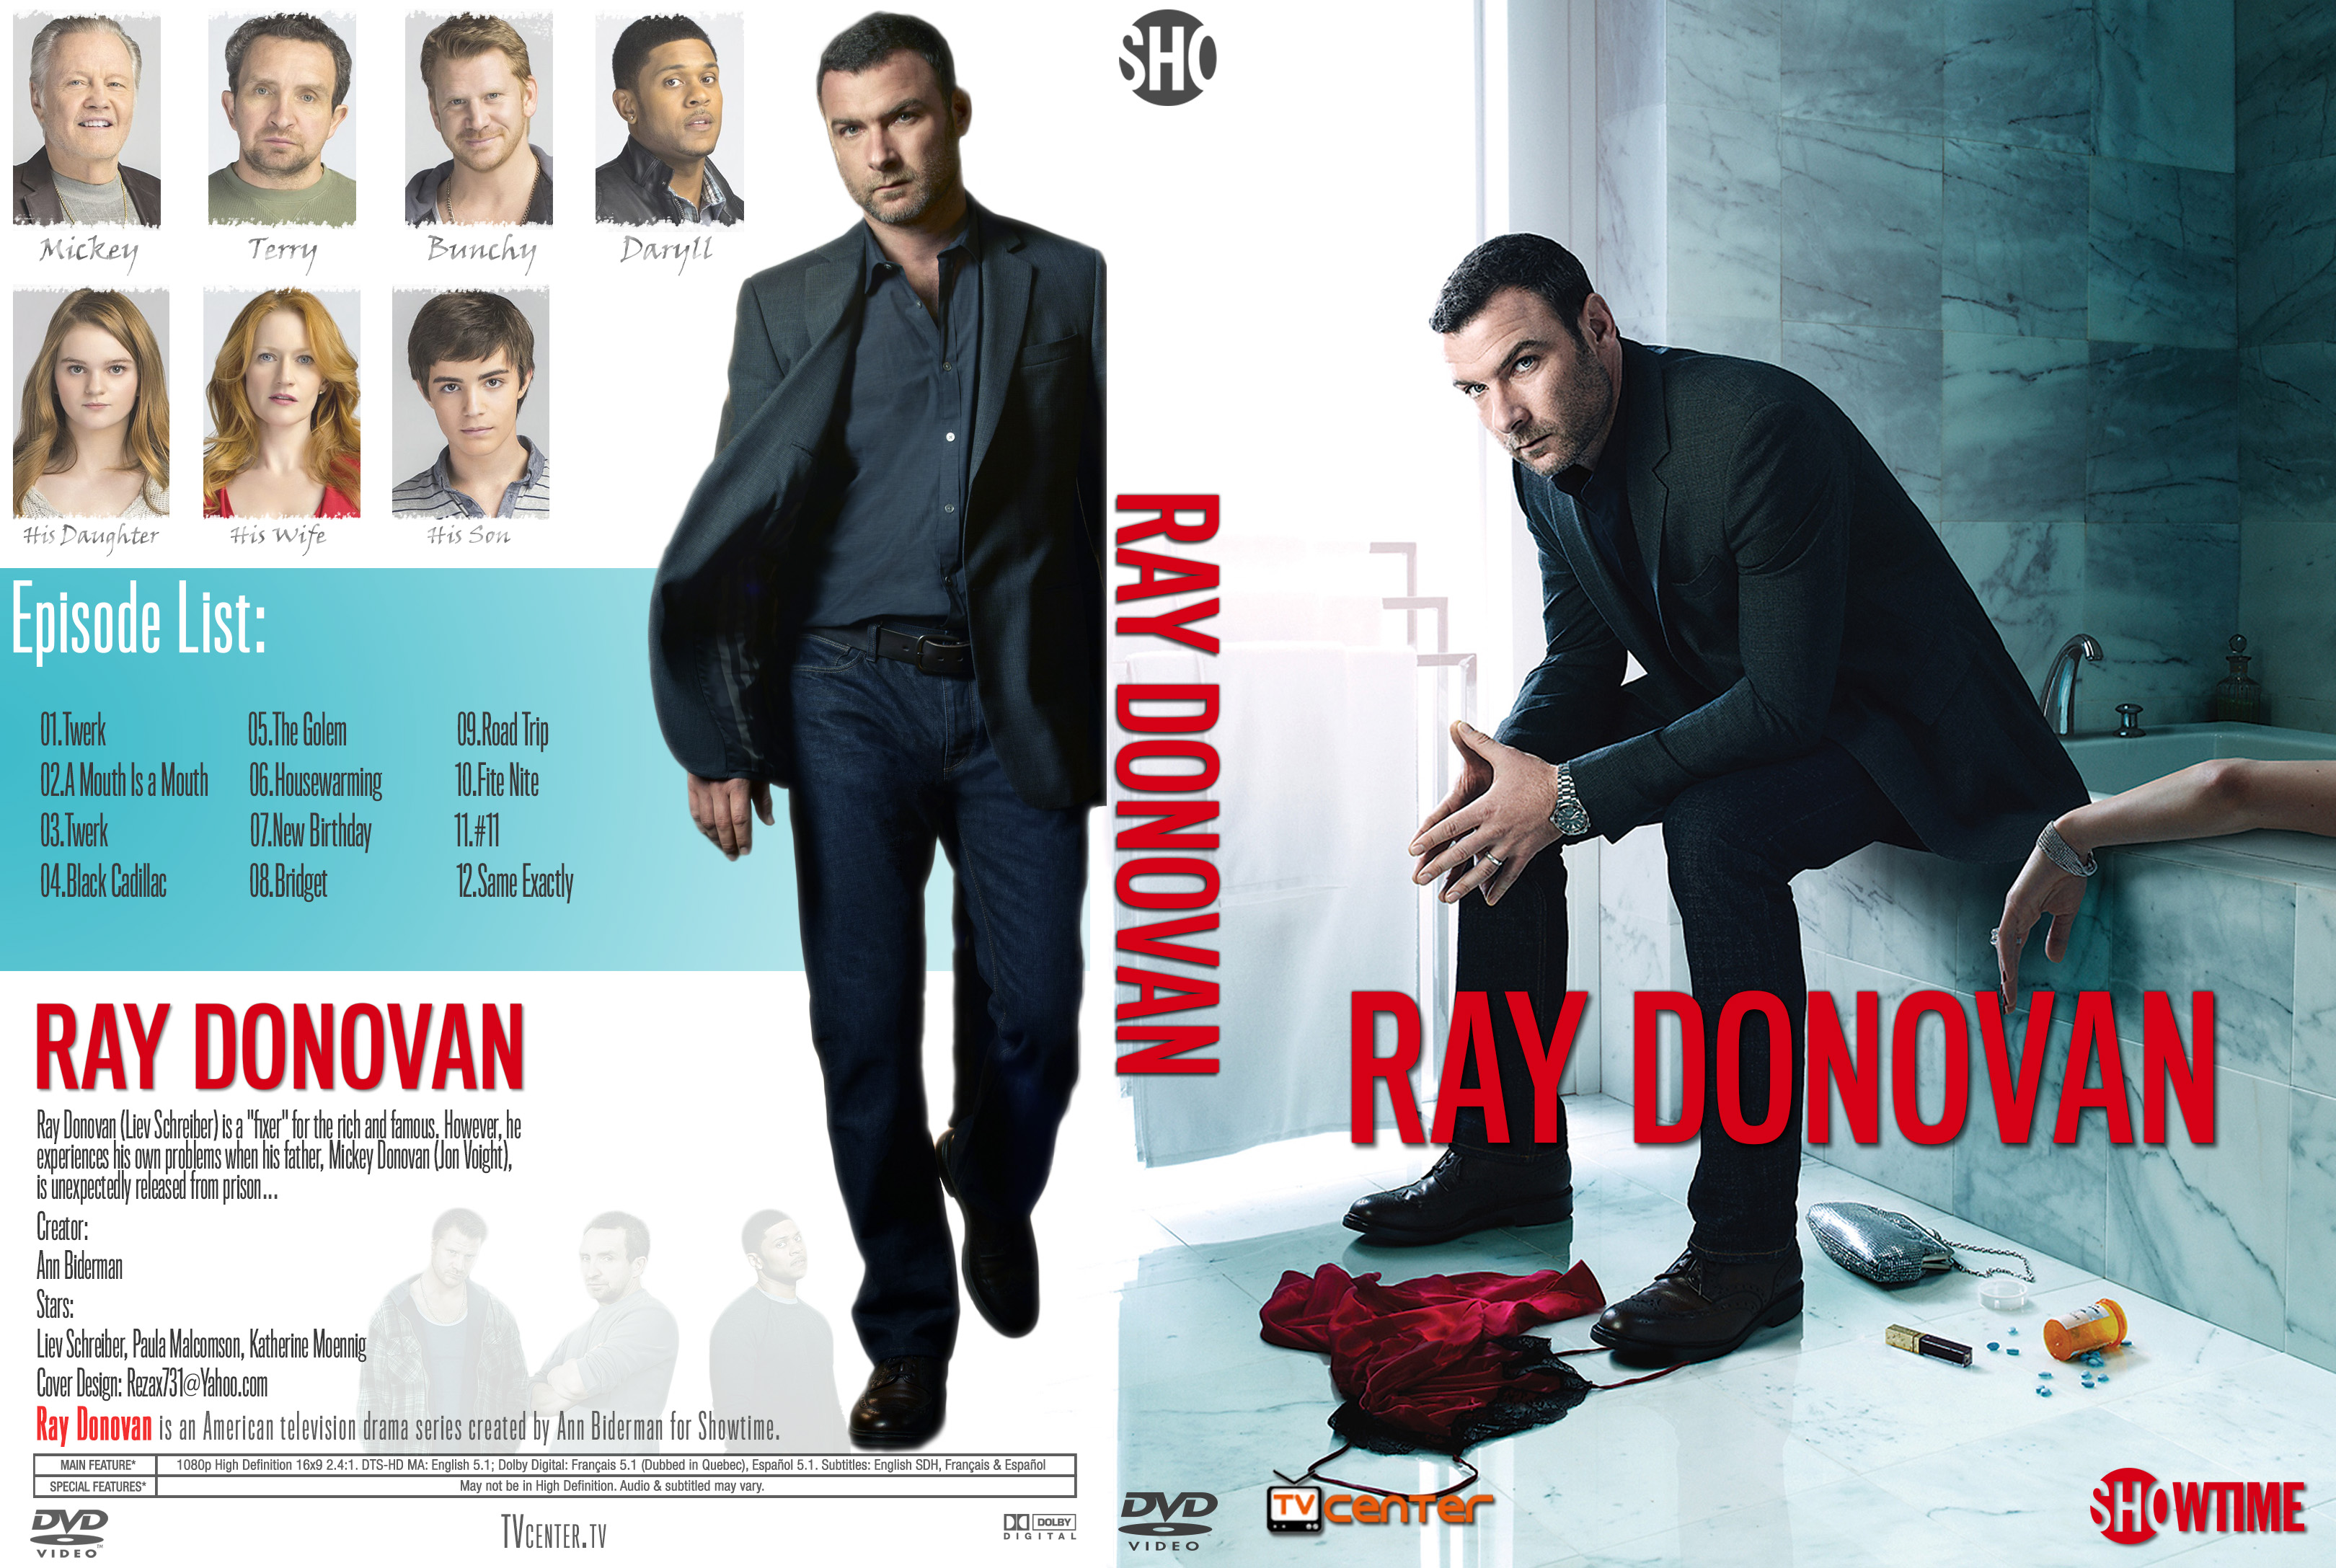 Ray donovan the movie